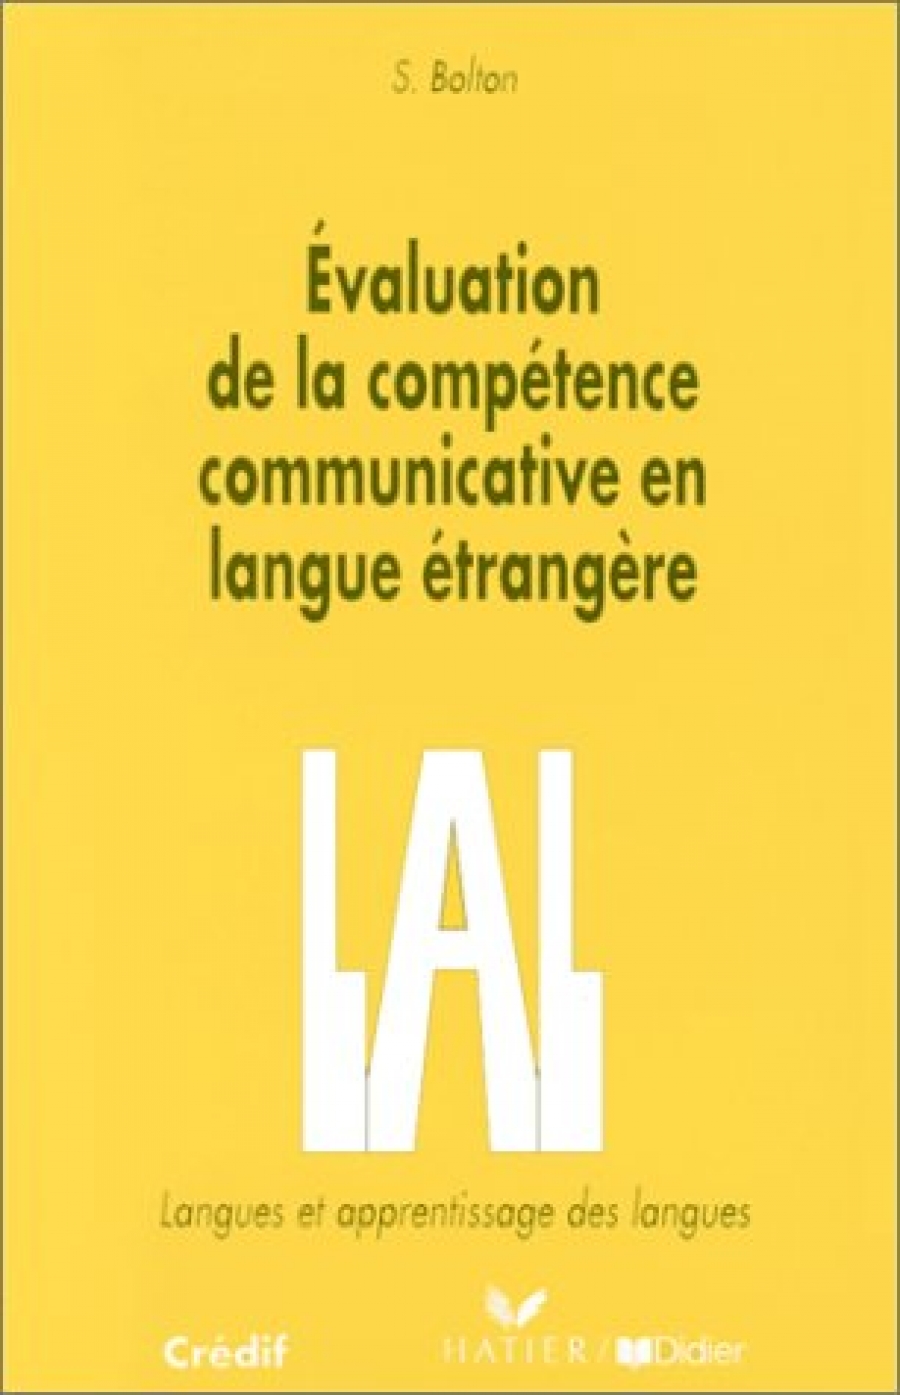 Bolton, S. Evaluation de la competence communicative en langue etrangere 